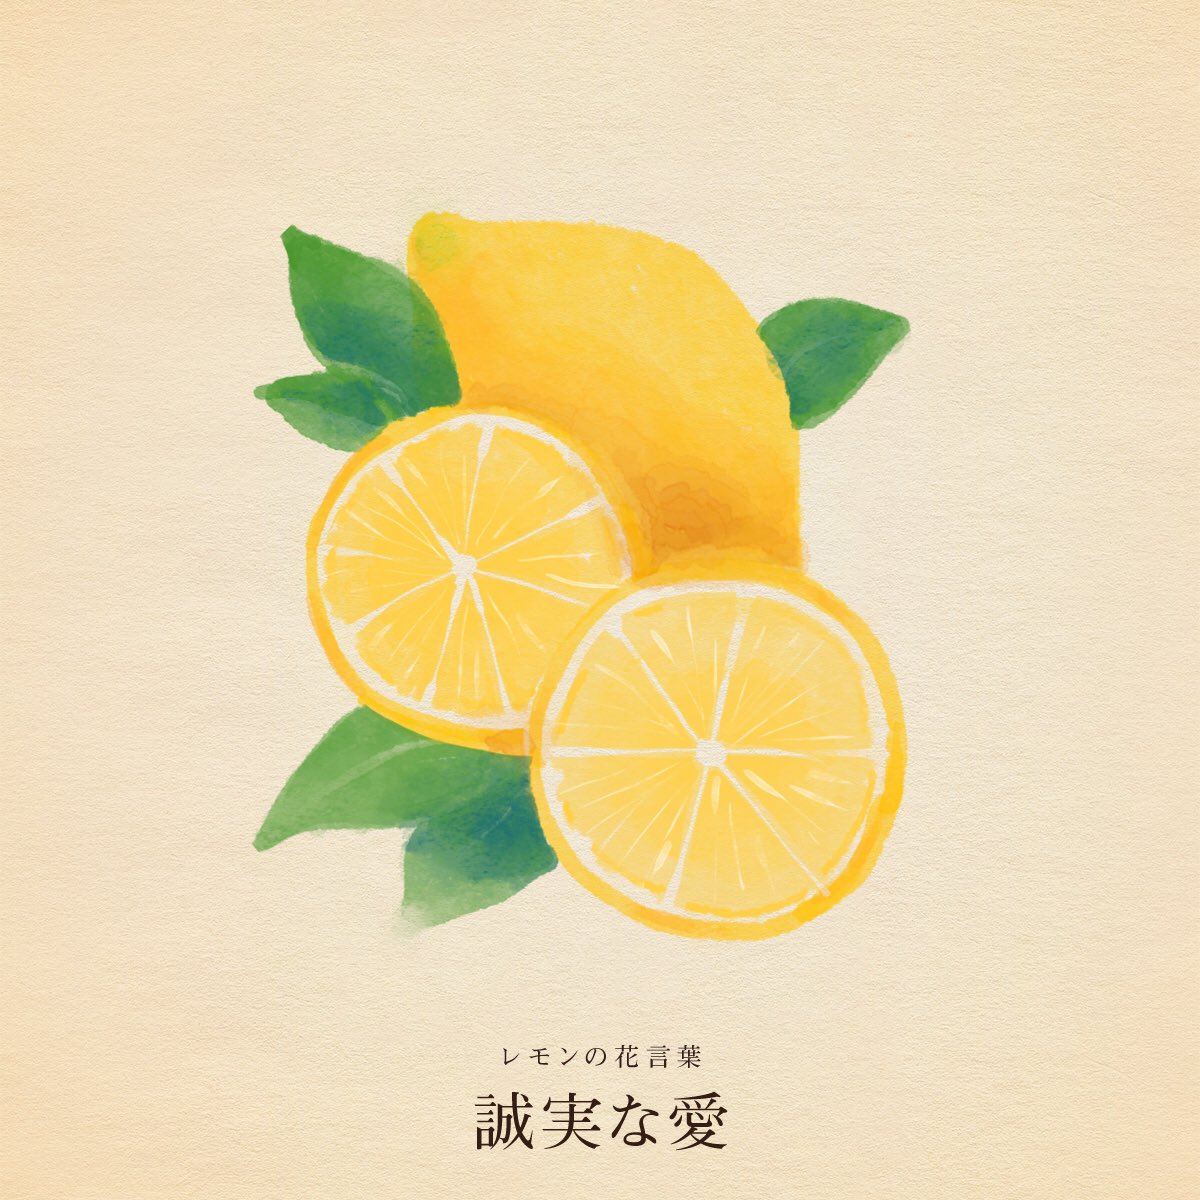 きょう5月22日は 国際生物多様性の日 ガールスカウトの日 サイクリングの日 たまご料理の日 ワーグナーの誕生日 アーサー・コナン・ドイルの誕生日 誕生花はレモン 花言葉「誠実な愛」